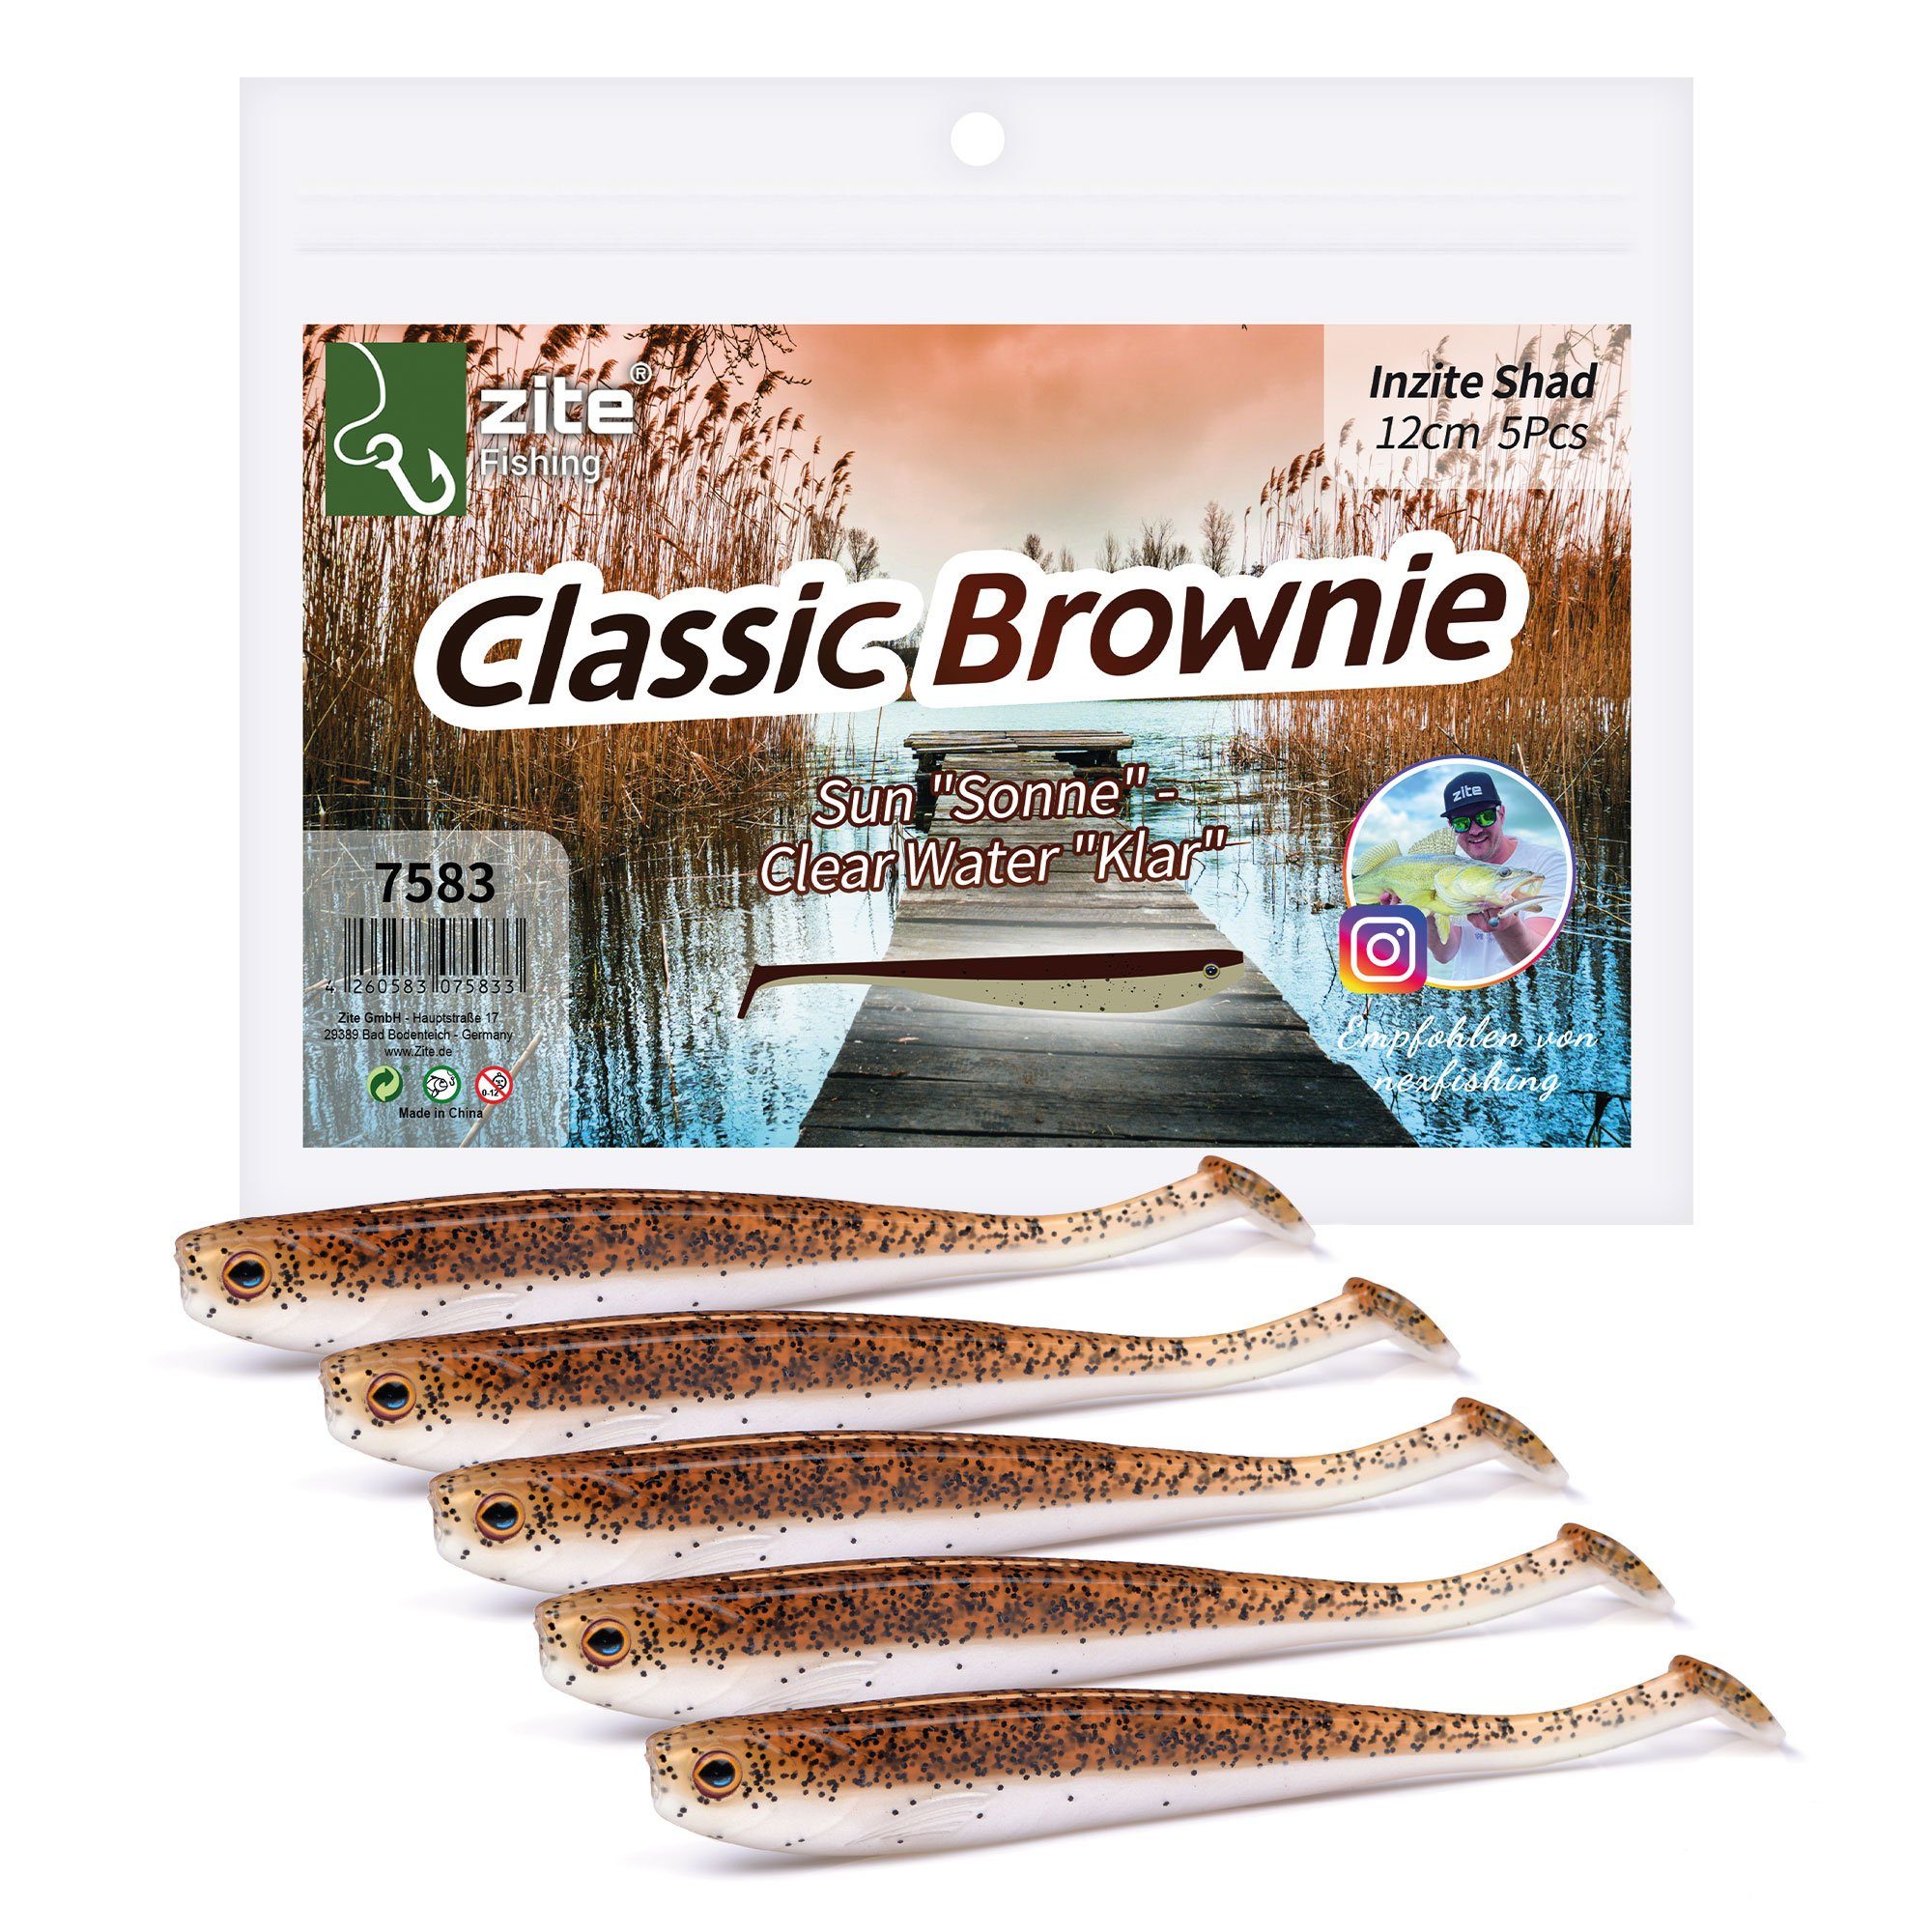 Zite Kunstköder Inzite Shad Classic Brownie - Zander Gummifisch 12cm 5 Stück